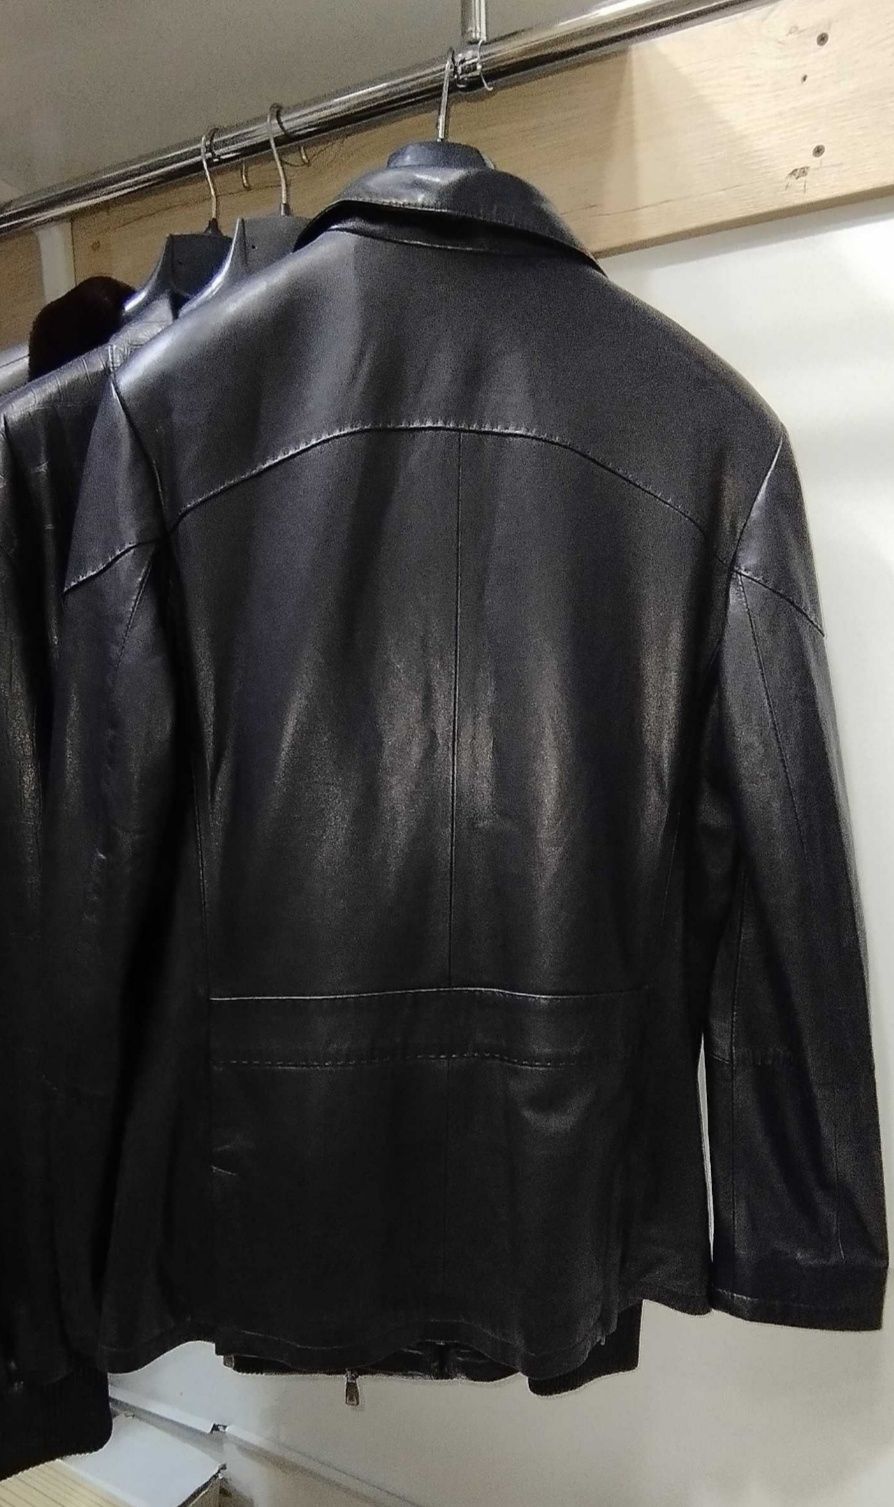 СРОЧНО Скидка Продам мужскую куртку Турция Лёгкая 50 размер